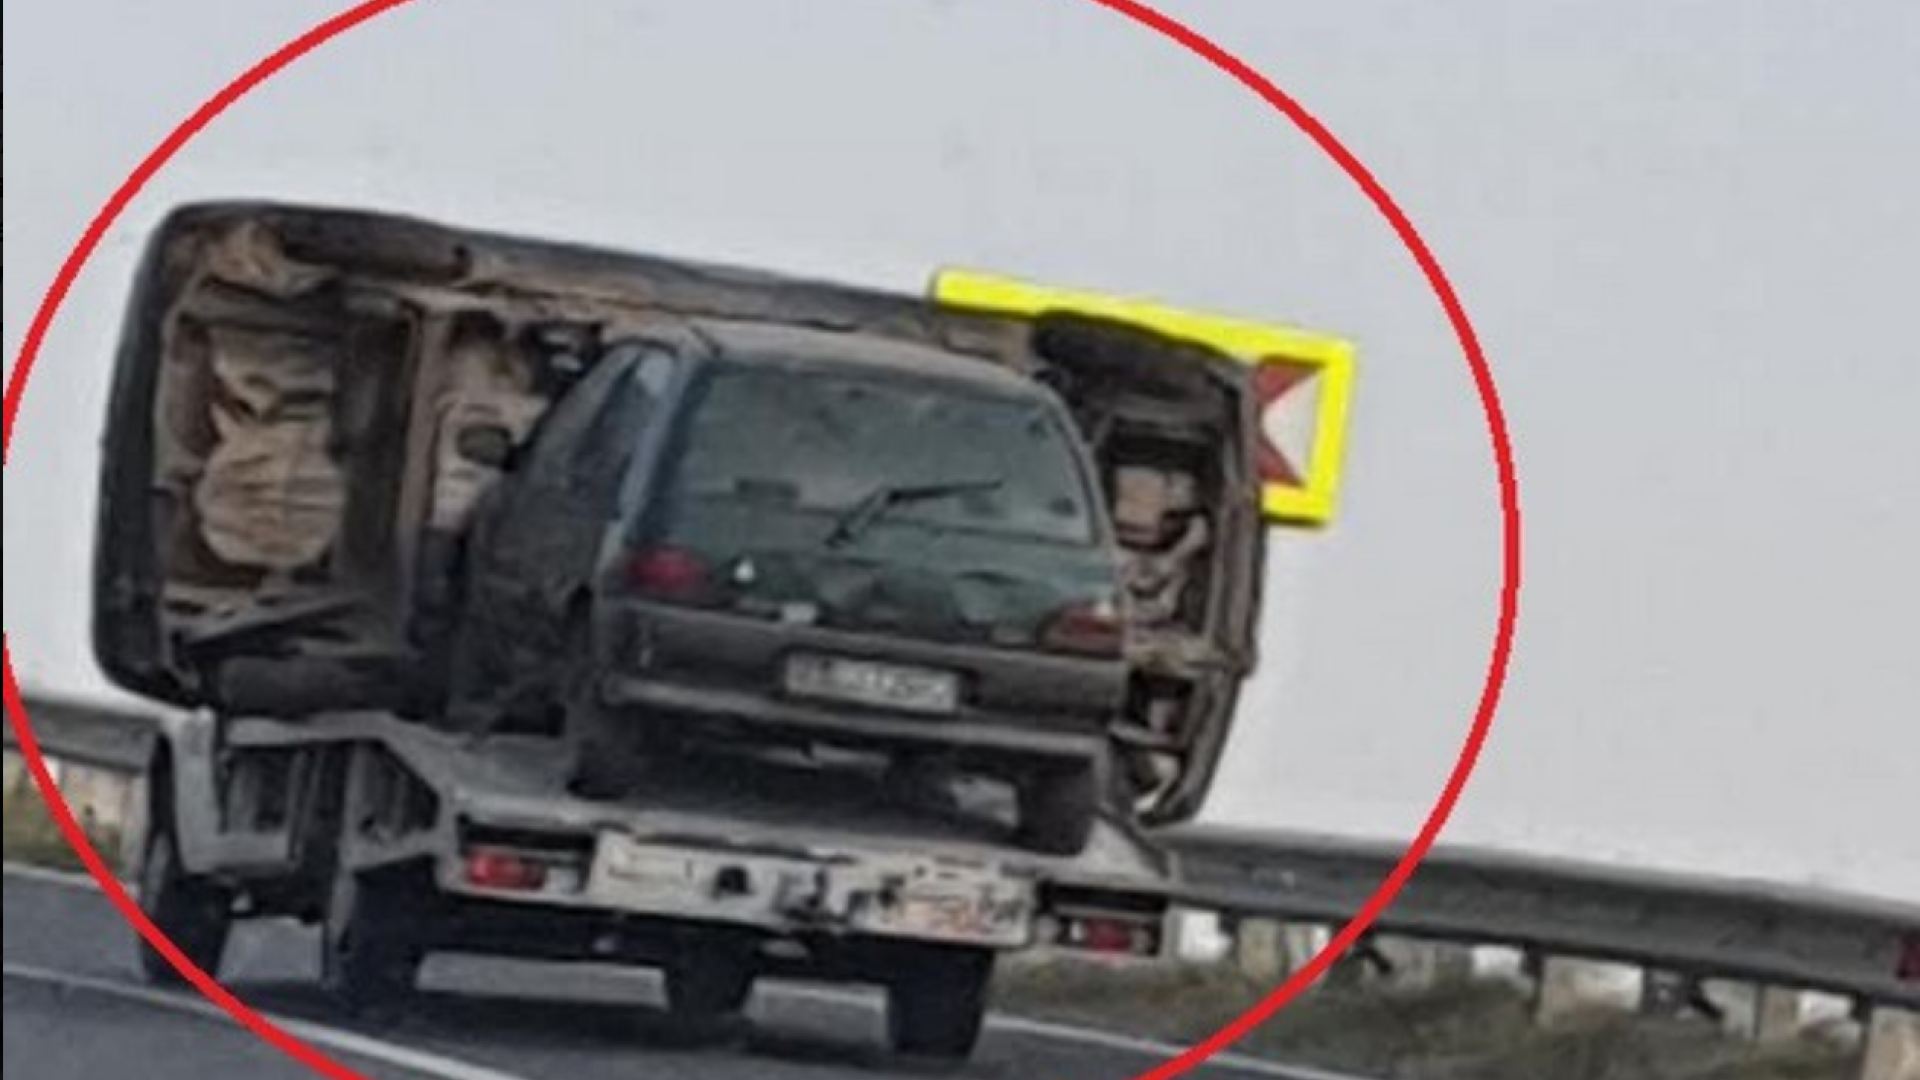 Șofer din Constanța, surprins în trafic cu două mașini pe o platformă. ”Așa șmecherie…”